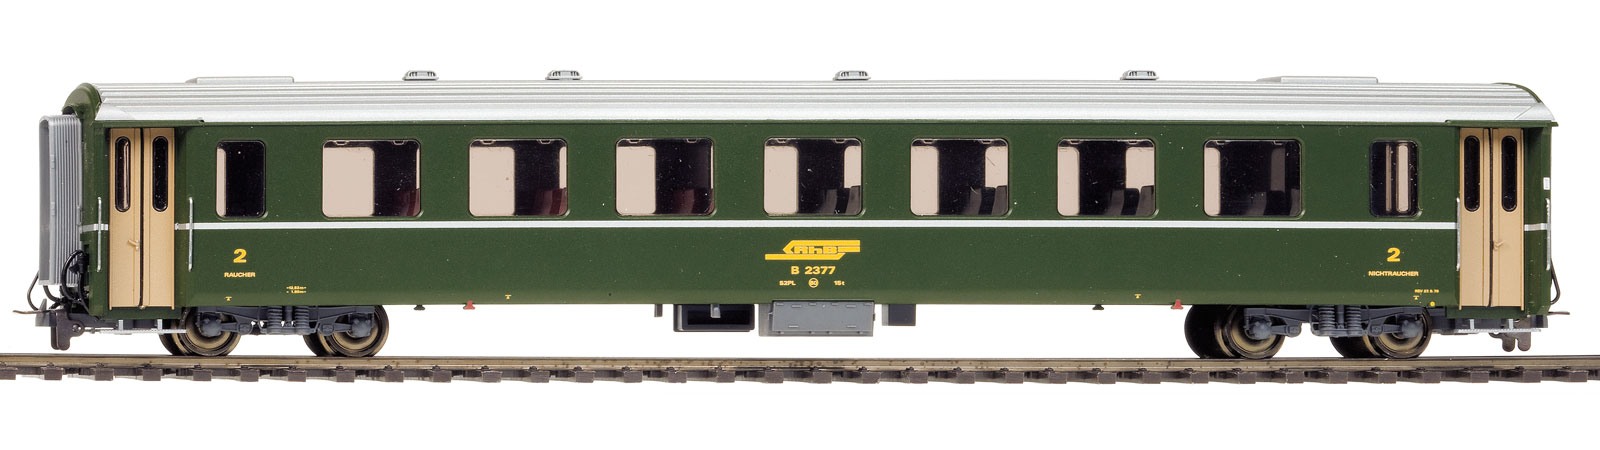 RhB B2442 EWII 2.Kl. grün Ep4 Personenwagen für Albula-Schnellzug